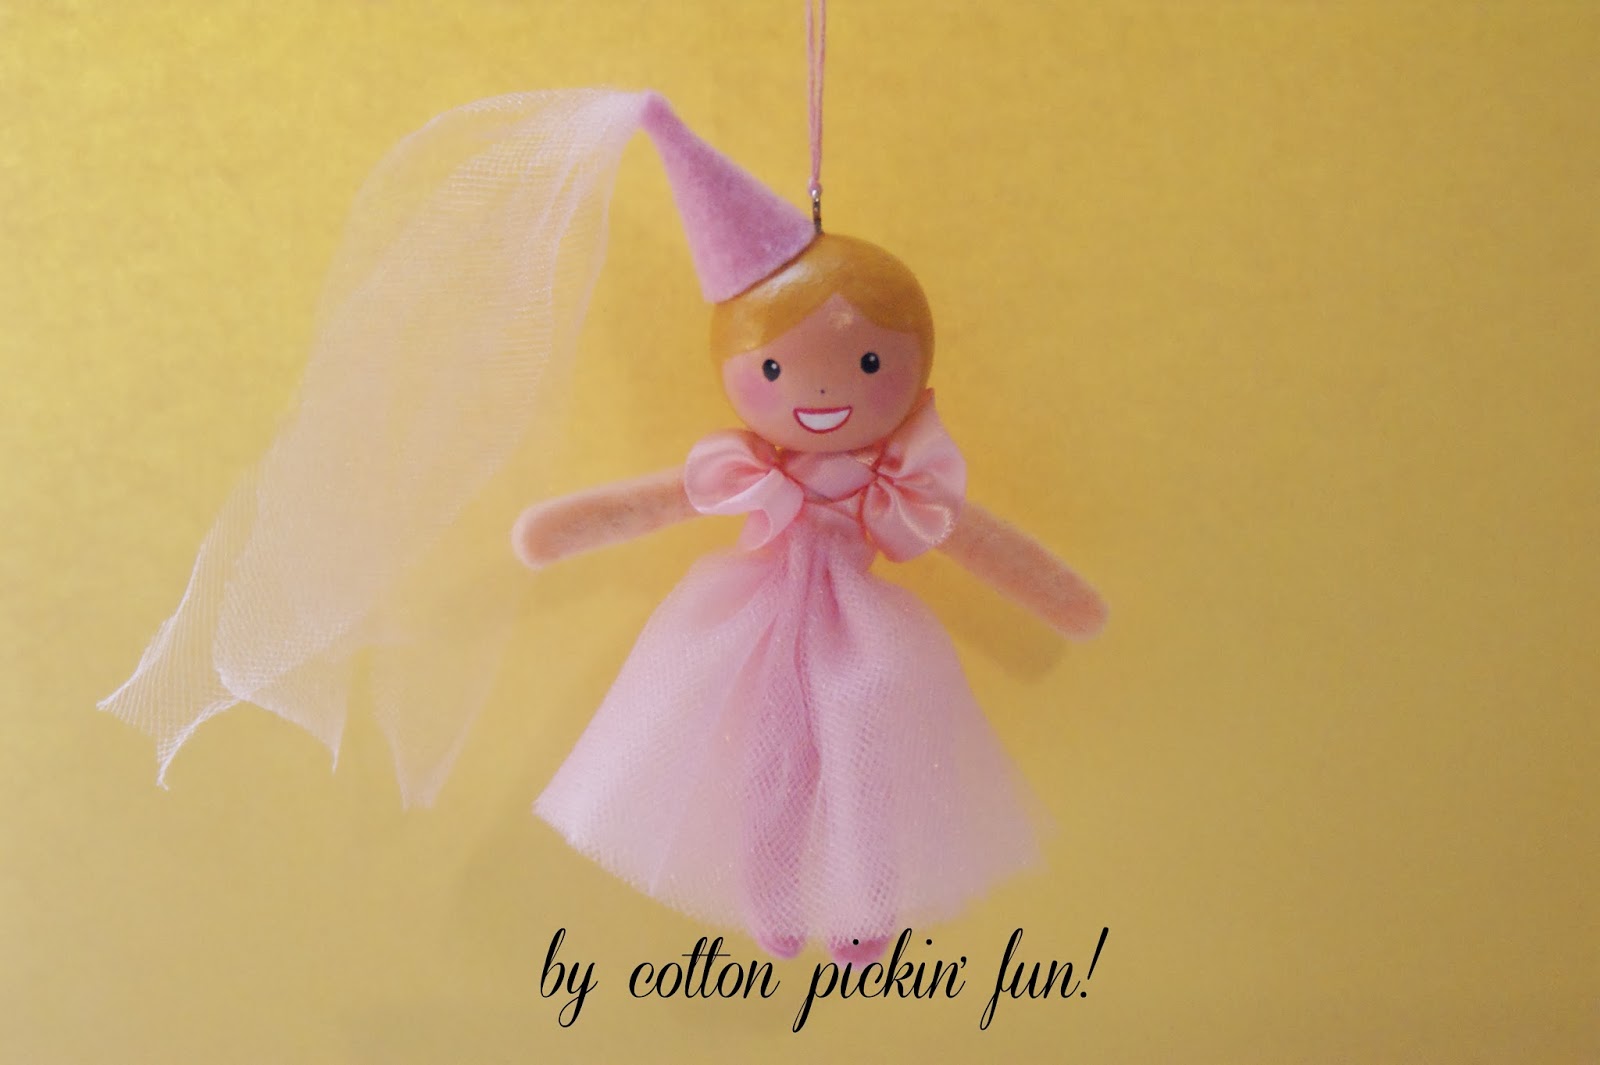 cotton pickin' fun!: Last Trick or Treat Ornament!!